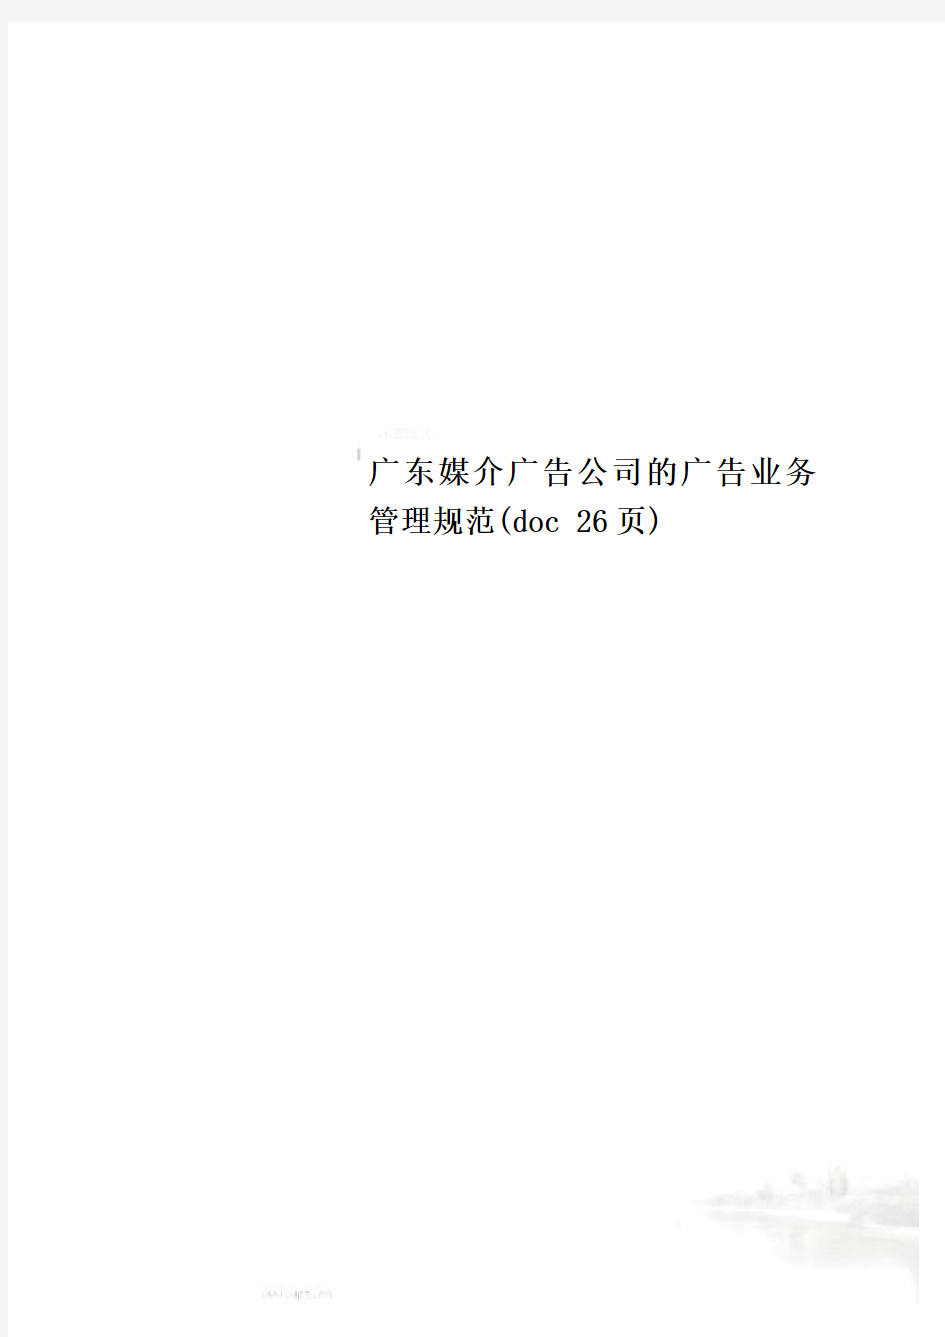 广东媒介广告公司的广告业务管理规范(doc 26页)